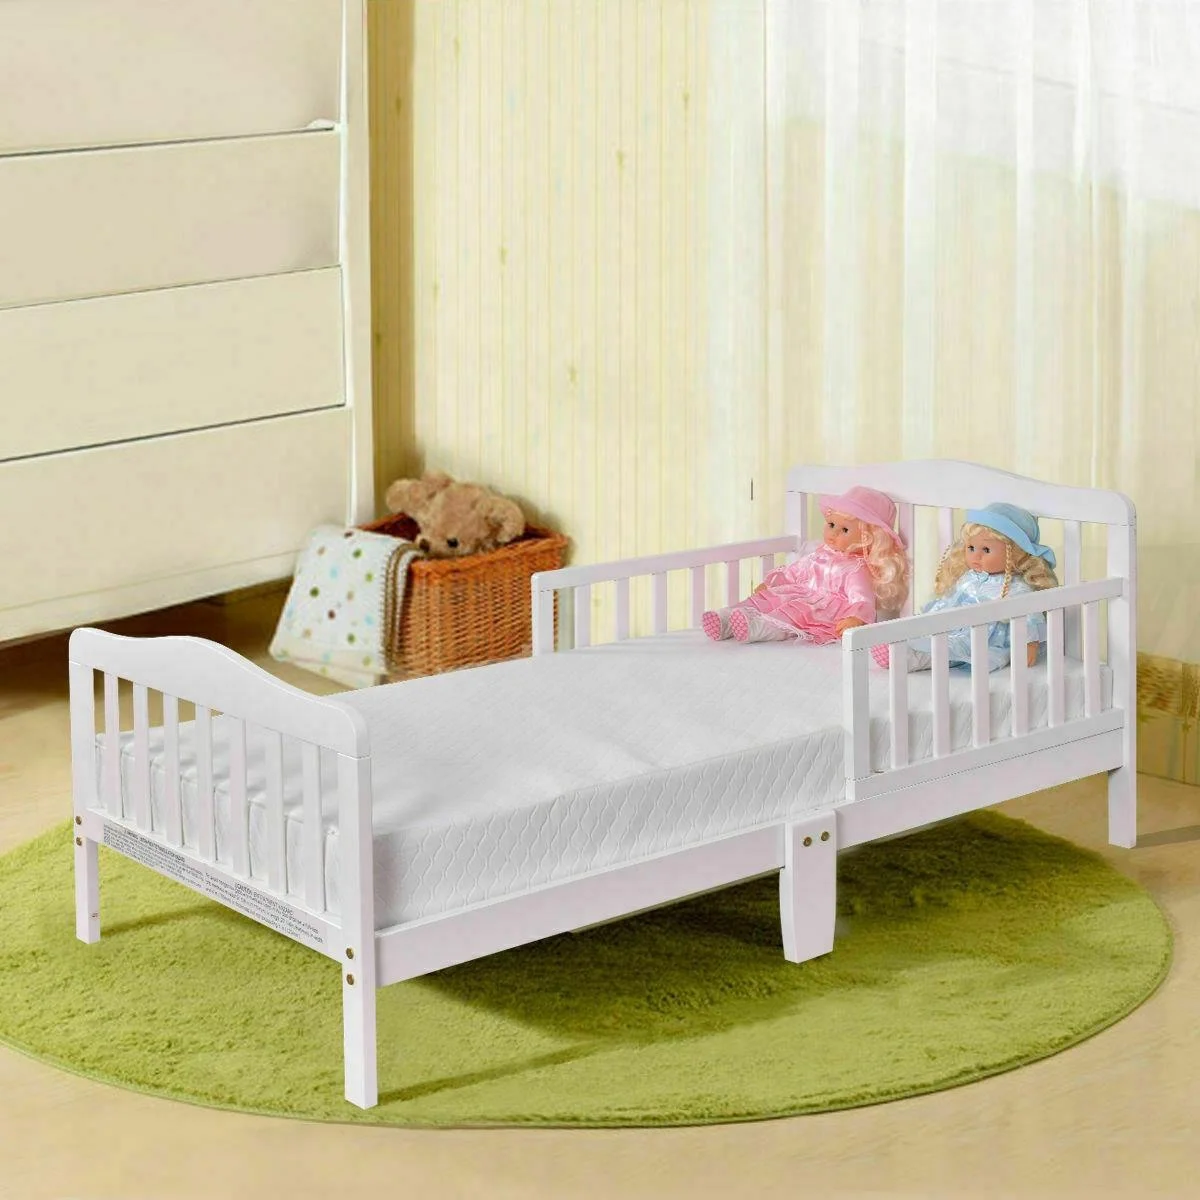 NOVA Kids Bedroom Furniture Wood Safety Guardrail Toddler Bed Frame For Boys And Girls